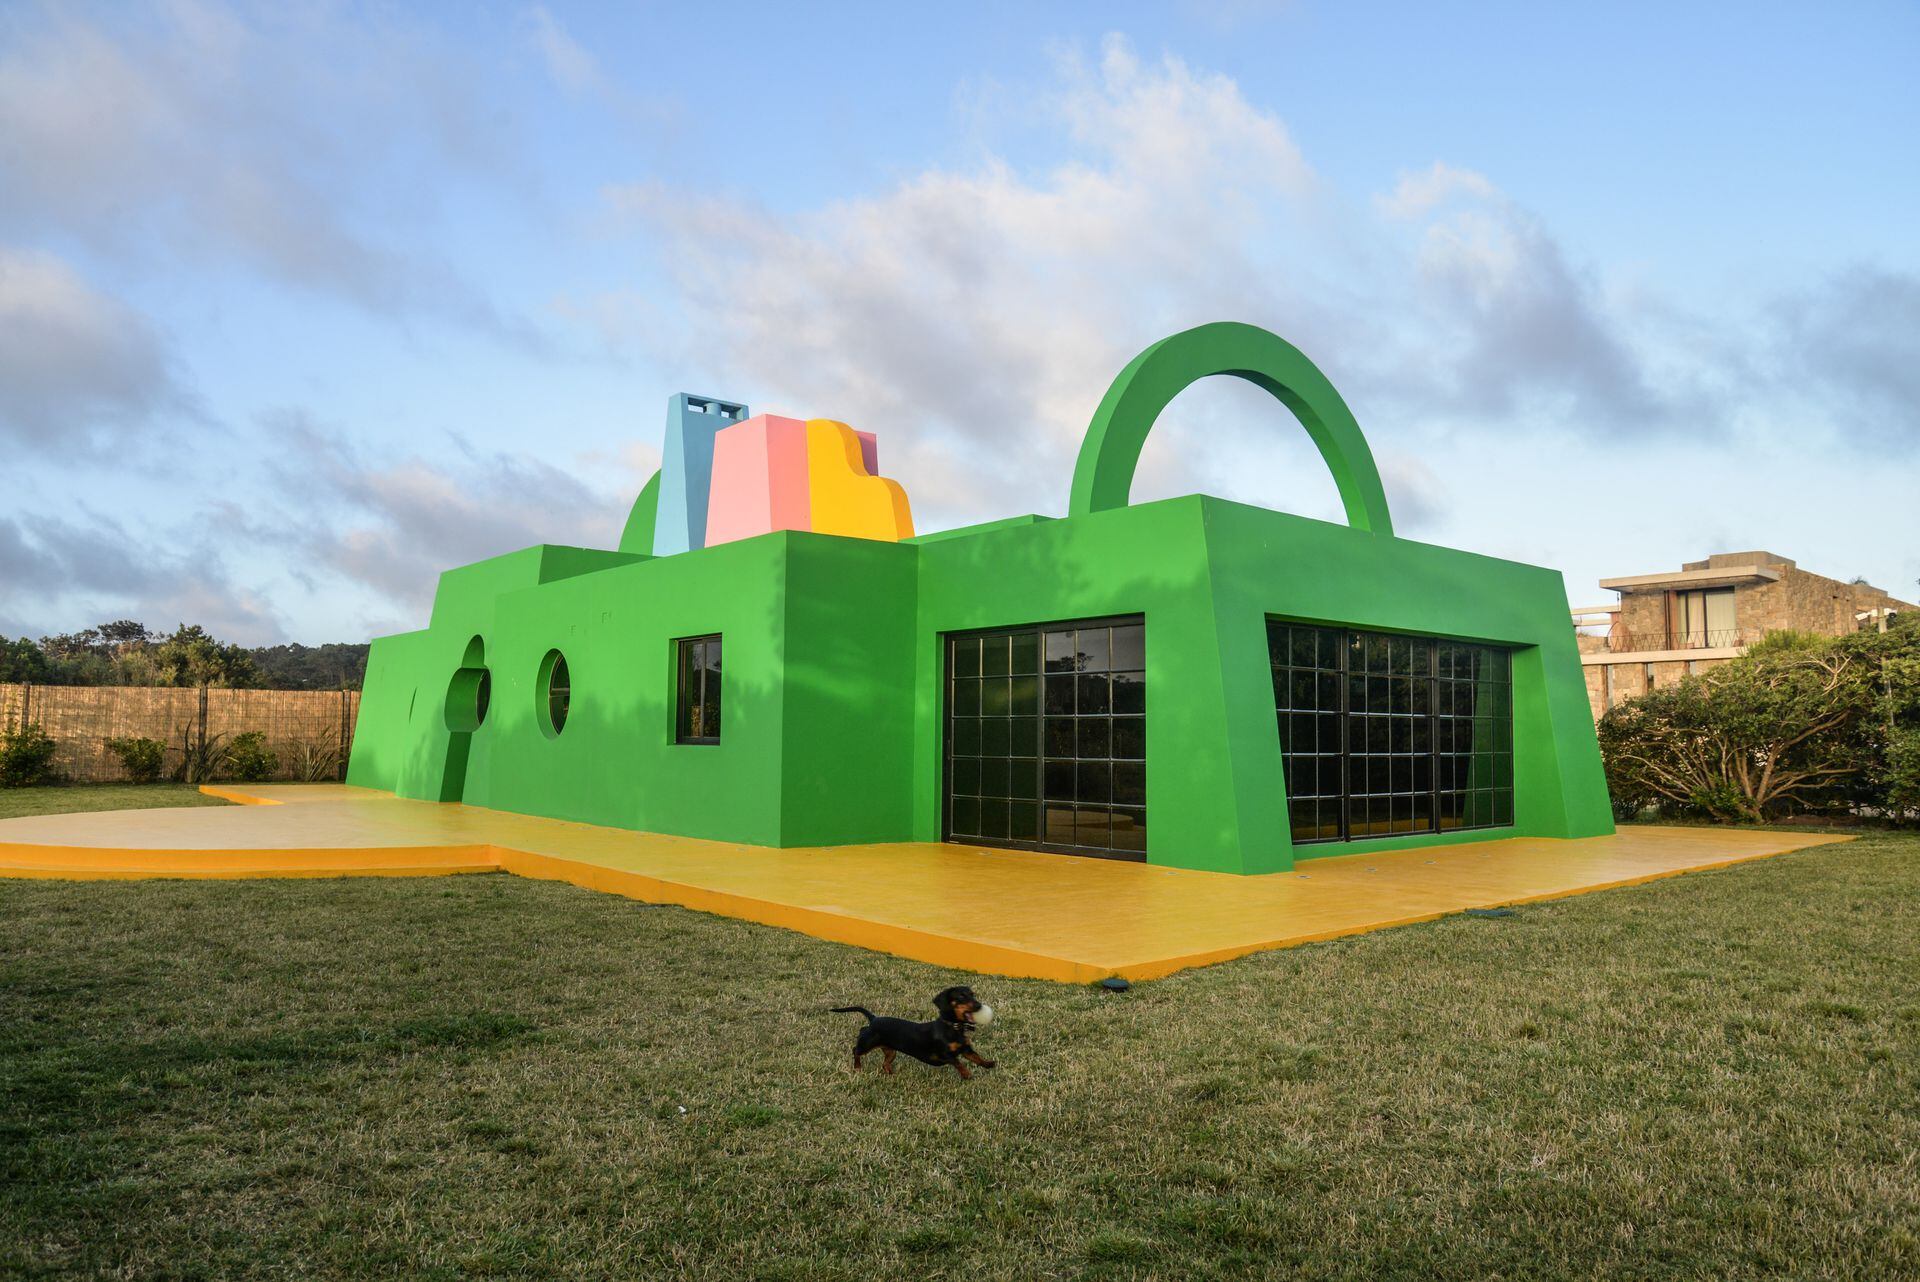 La propuesta artística de José Ignacio se completa con la inauguración de la Fundación Ama Amoedo Residencia Artística (FAARA), una casa colorida con vista al mar que albergará artistas durante seis semanas